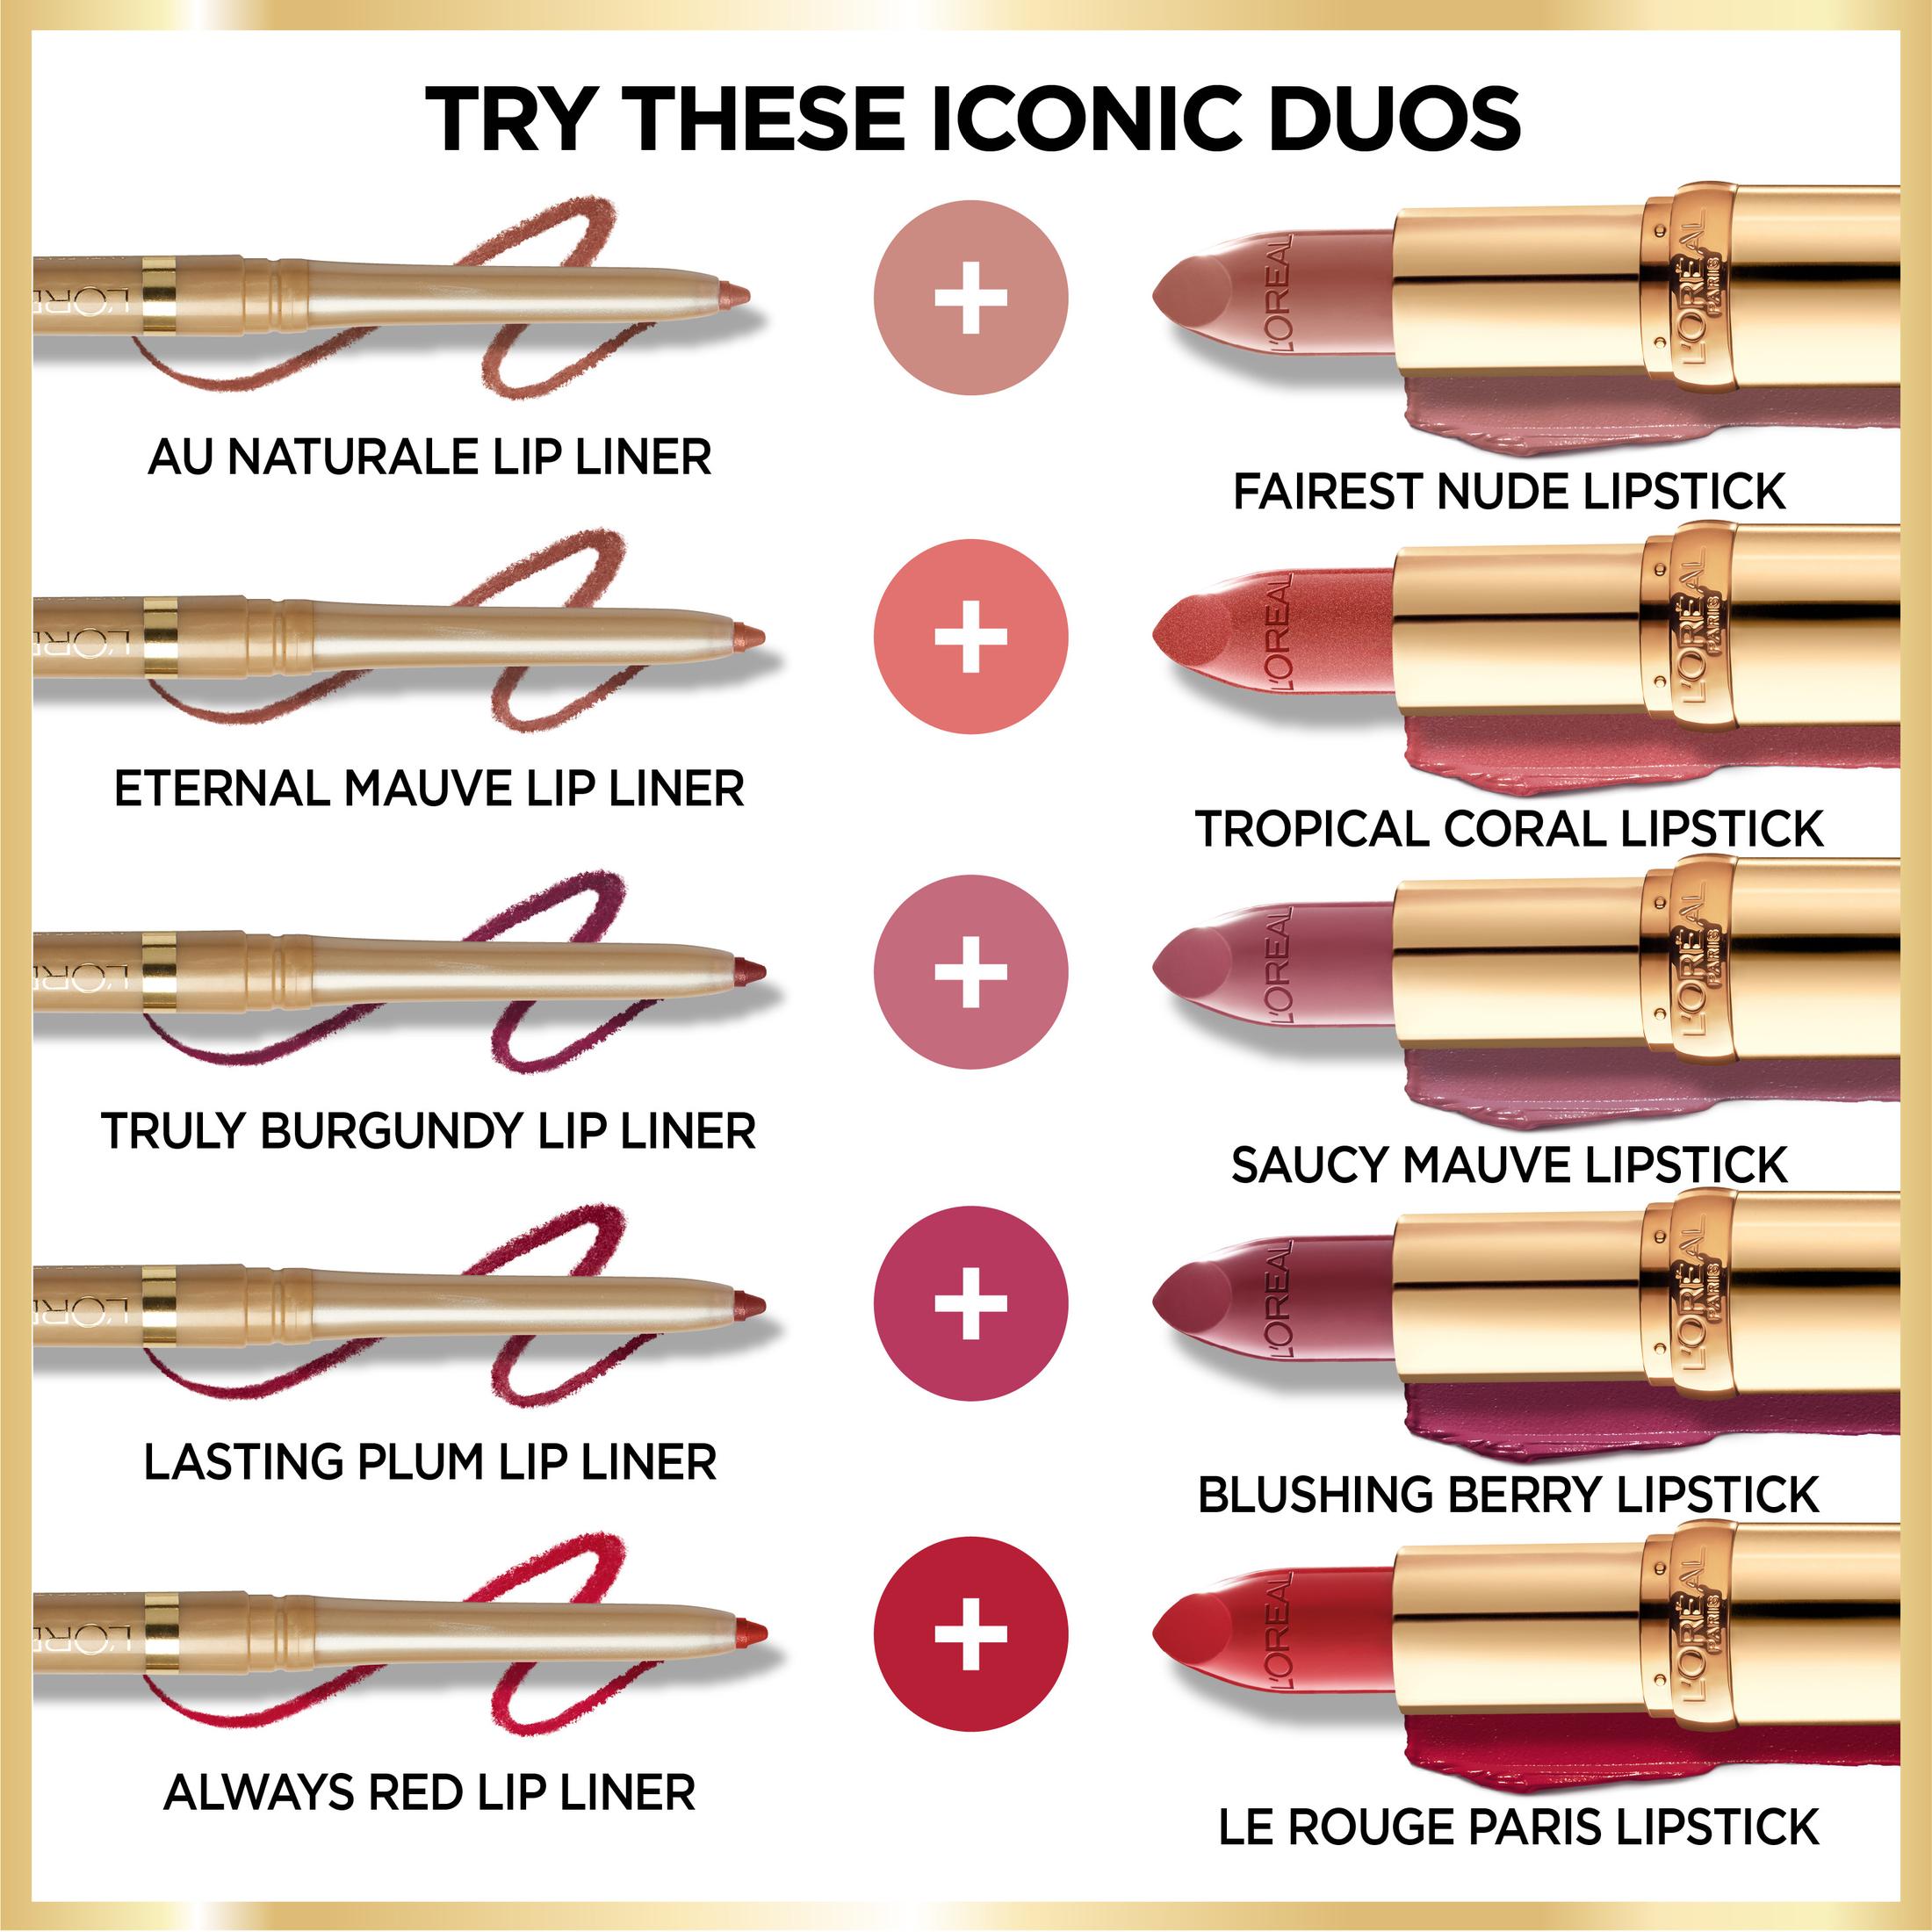 L'Oreal Paris Colour Riche Original Satin Lipstick for Moisturized Lips, 800 Fairest Nude - image 5 of 5